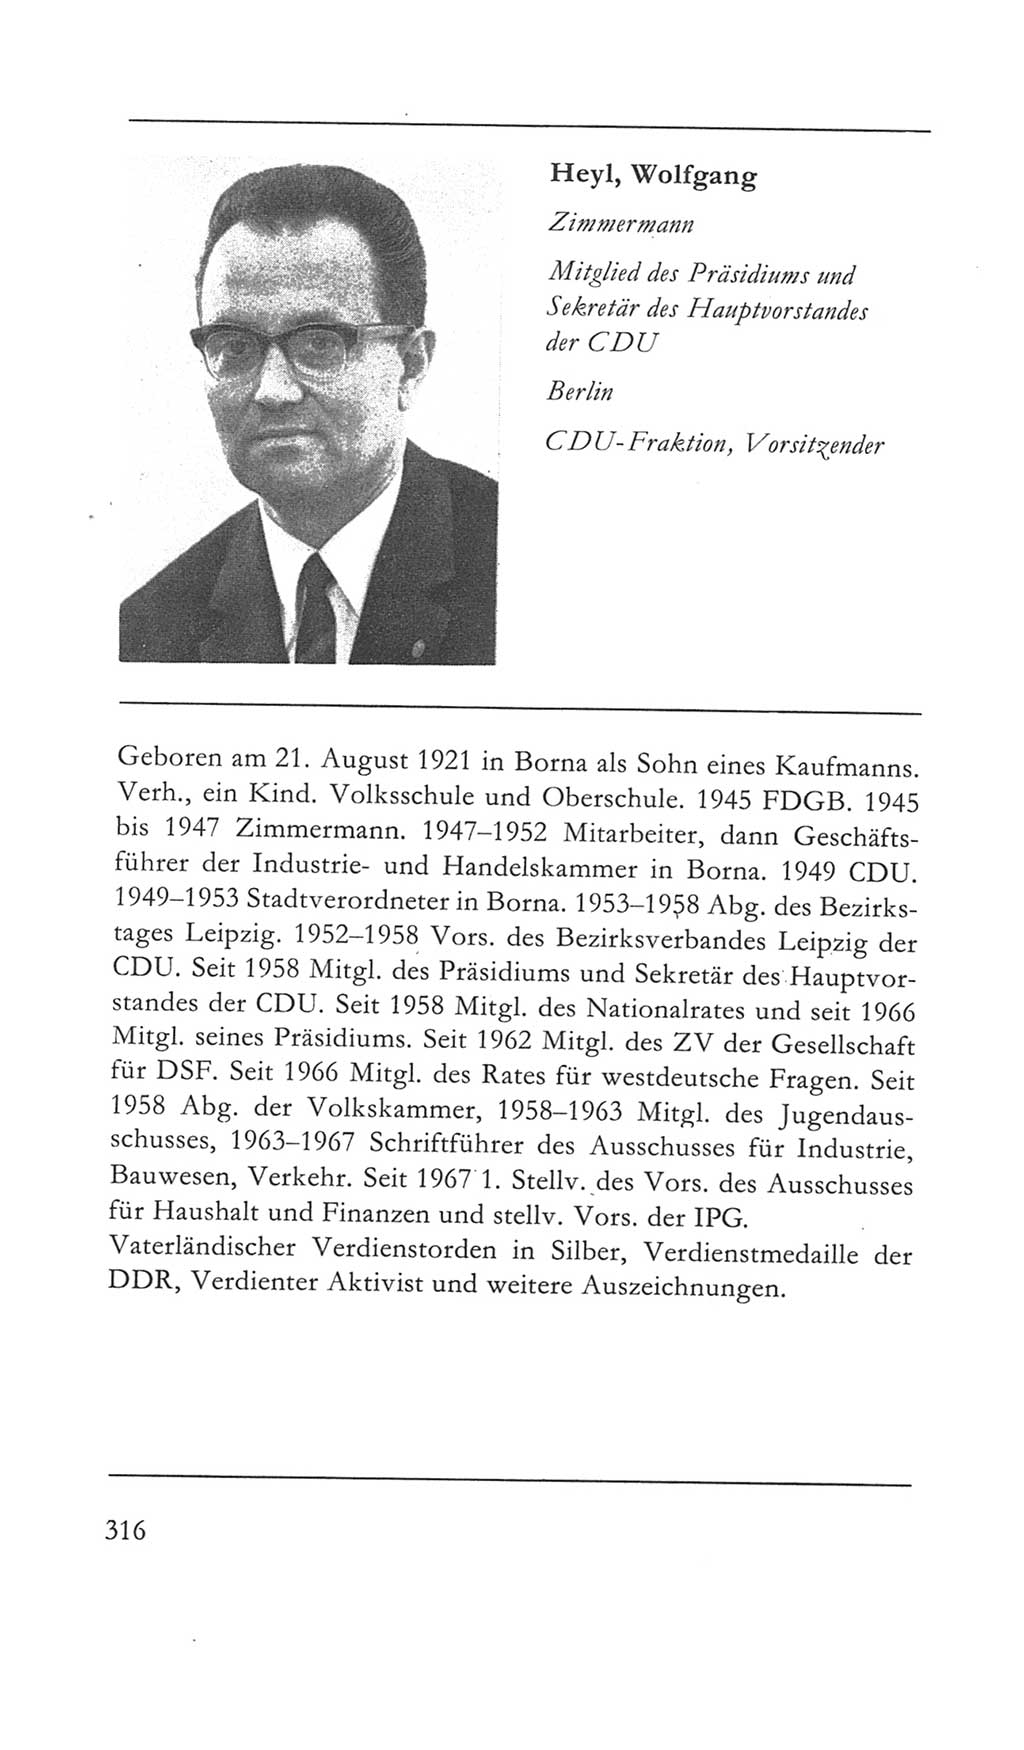 Volkskammer (VK) der Deutschen Demokratischen Republik (DDR) 5. Wahlperiode 1967-1971, Seite 316 (VK. DDR 5. WP. 1967-1971, S. 316)